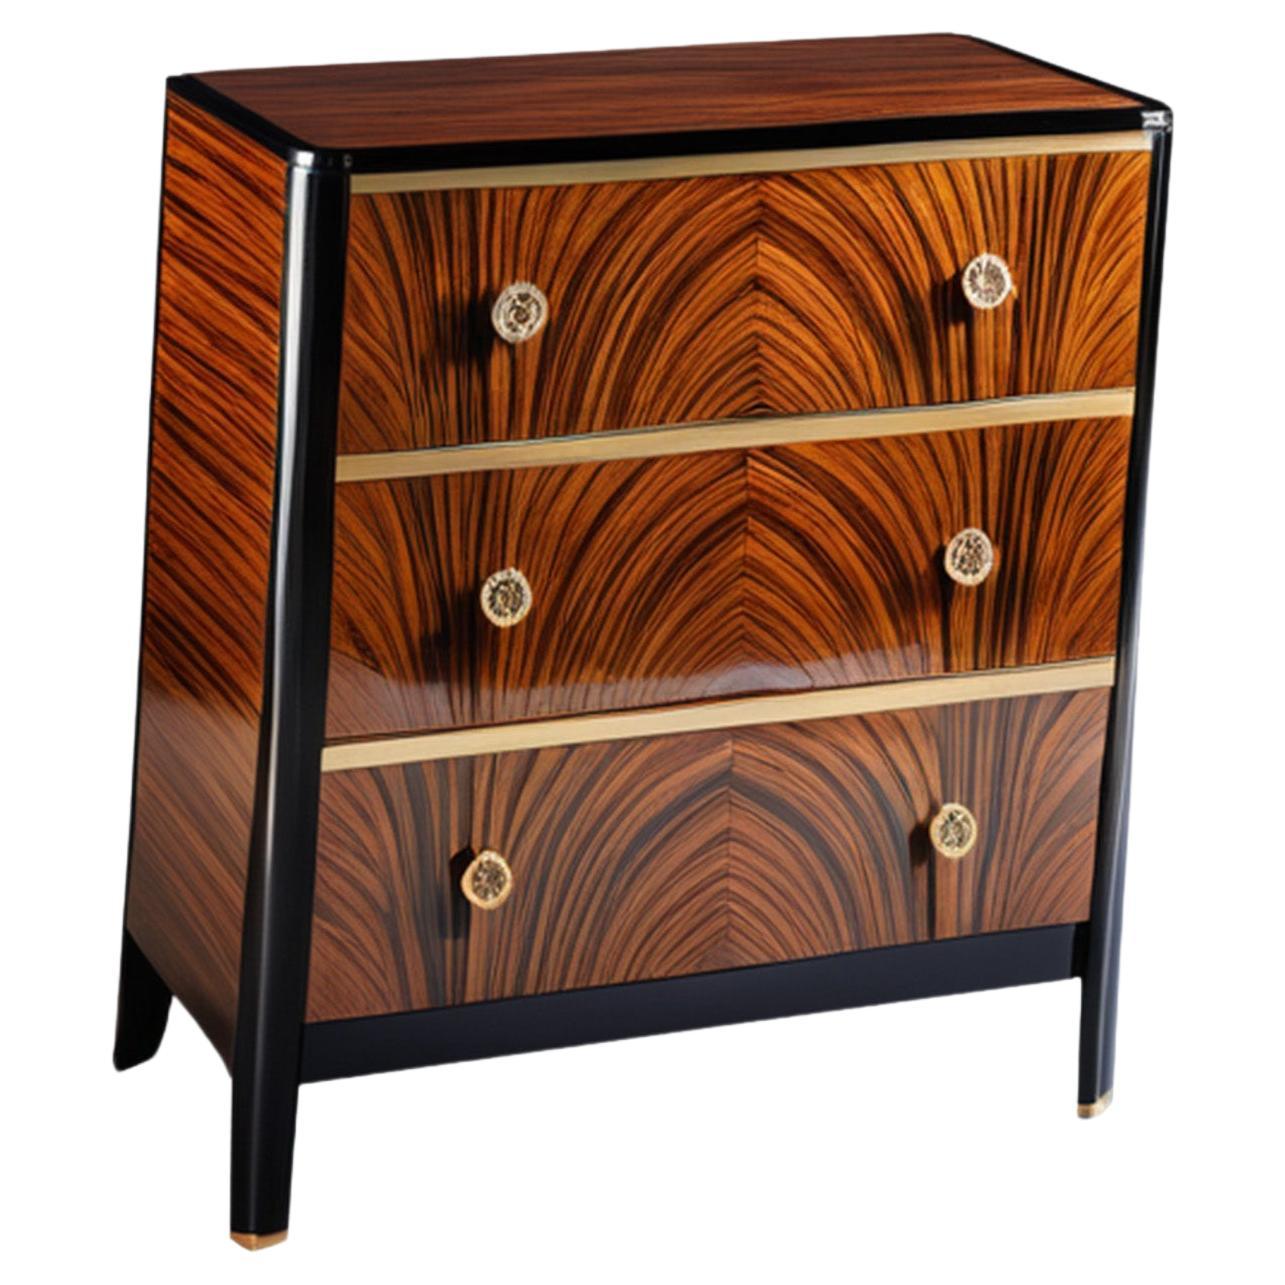 Art Deco chest of drawers with beautiful Macassar veneer